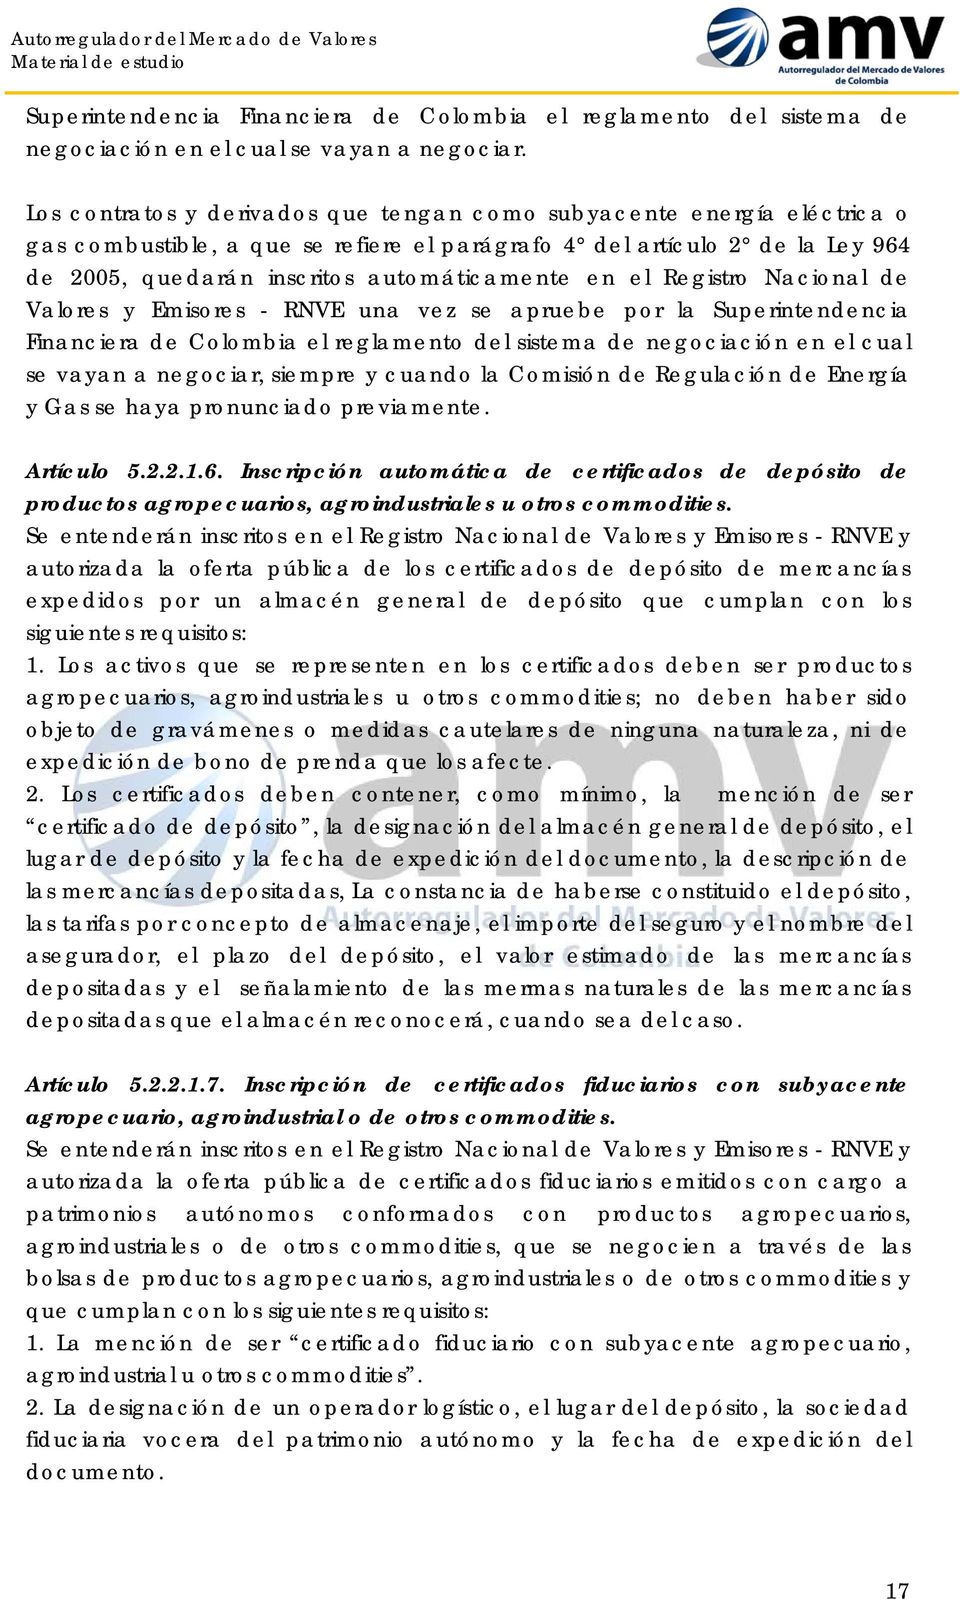 el Registro Nacional de Valores y Emisores - RNVE una vez se apruebe por la Superintendencia Financiera de Colombia el reglamento del sistema de negociación en el cual se vayan a negociar, siempre y